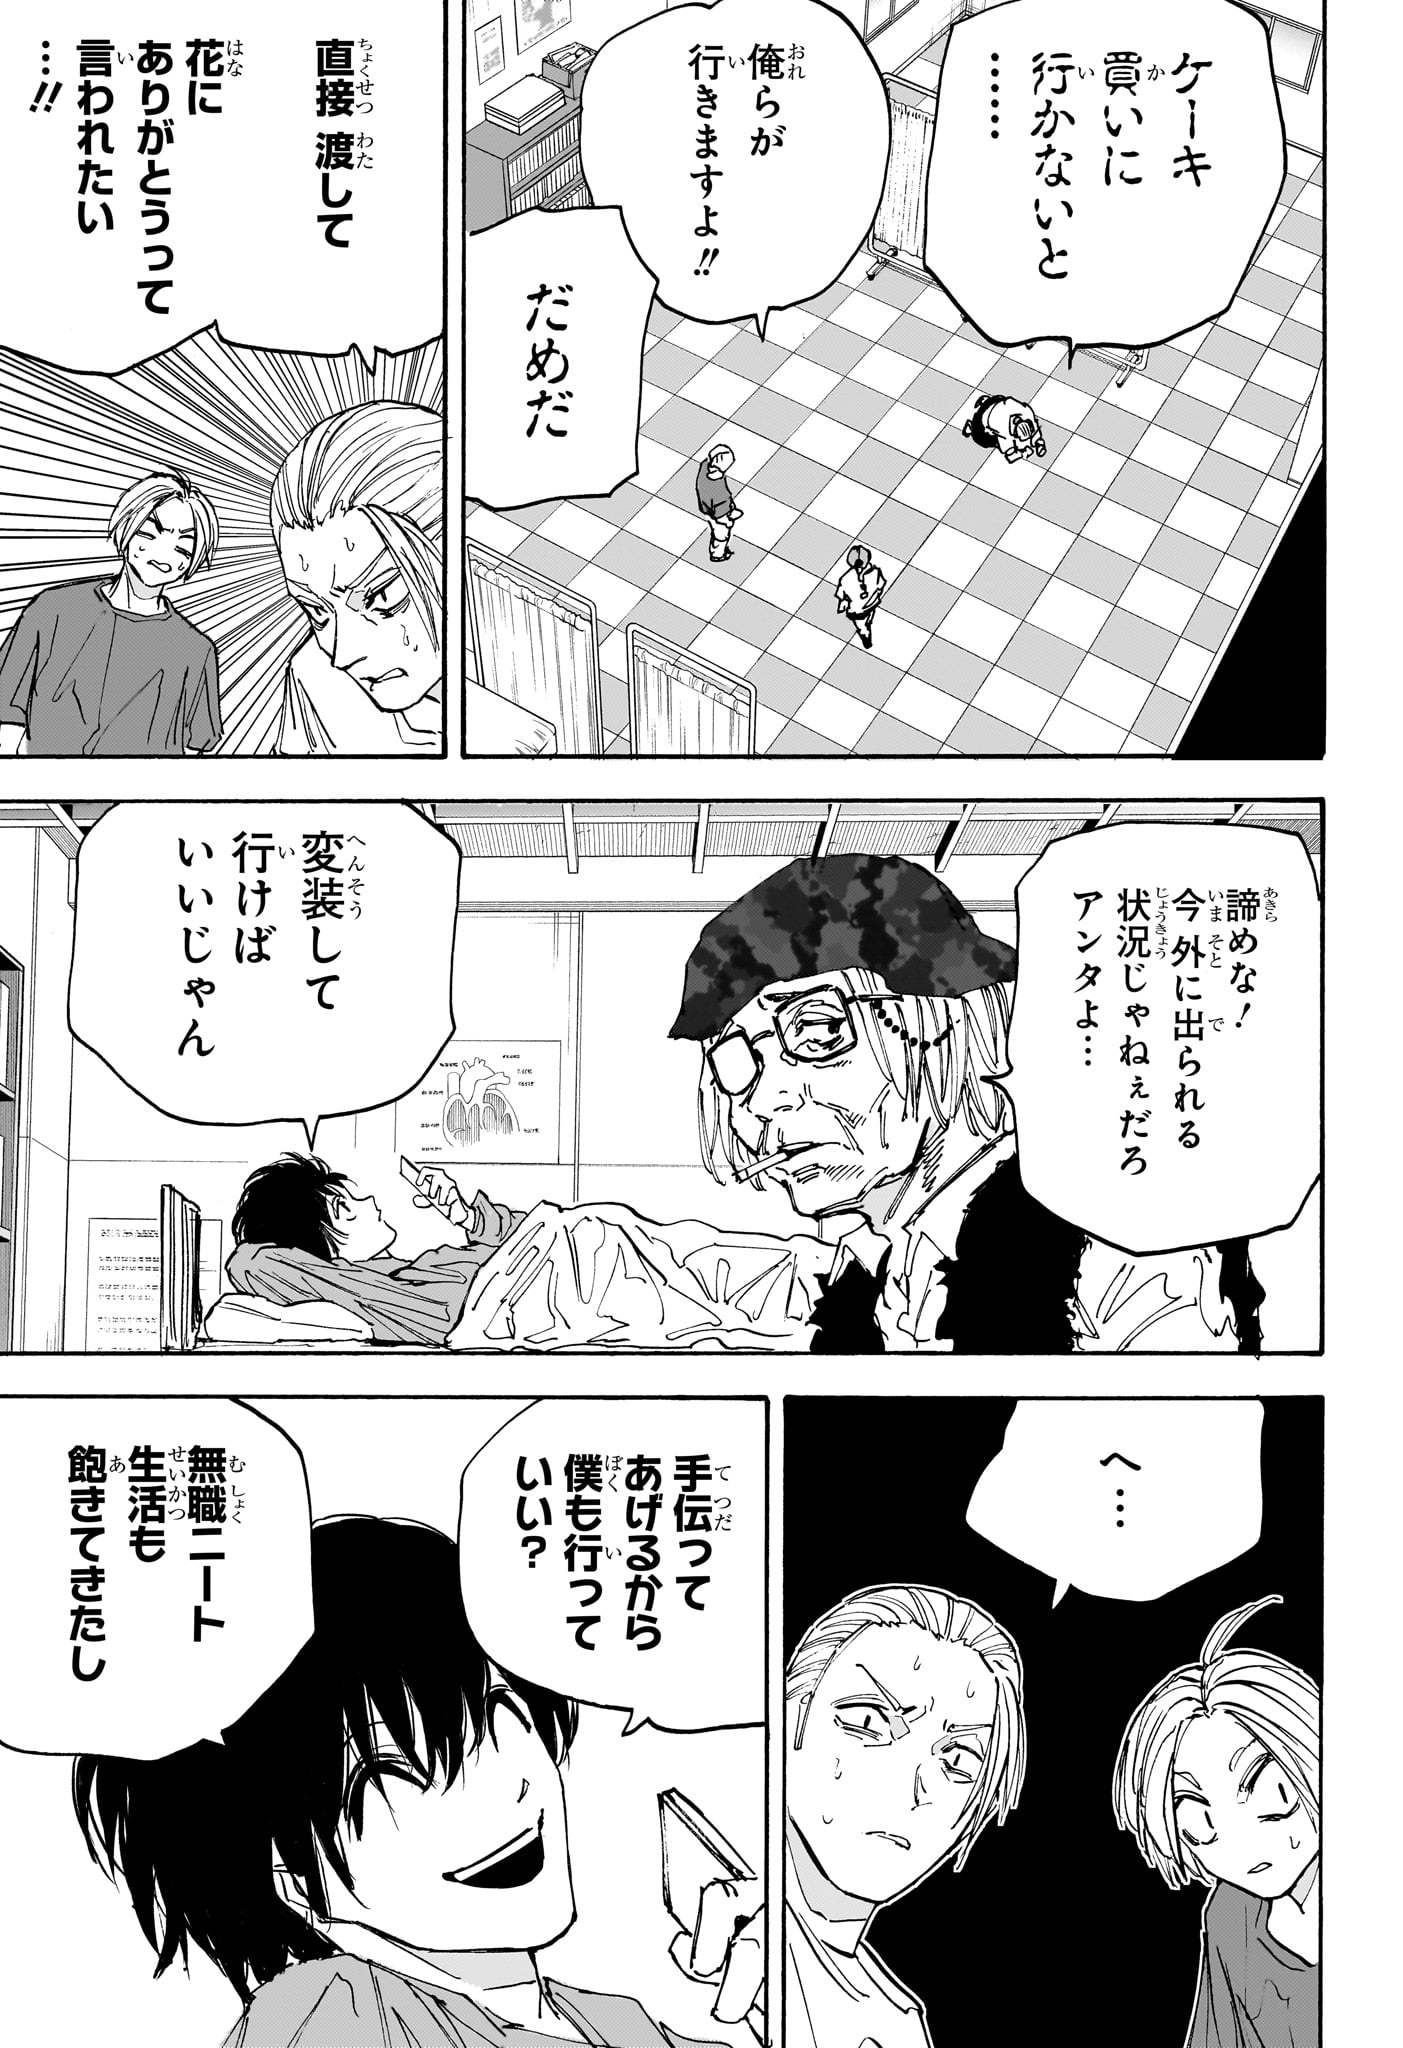 Sakamoto Days - Chapter 169 - Page 15